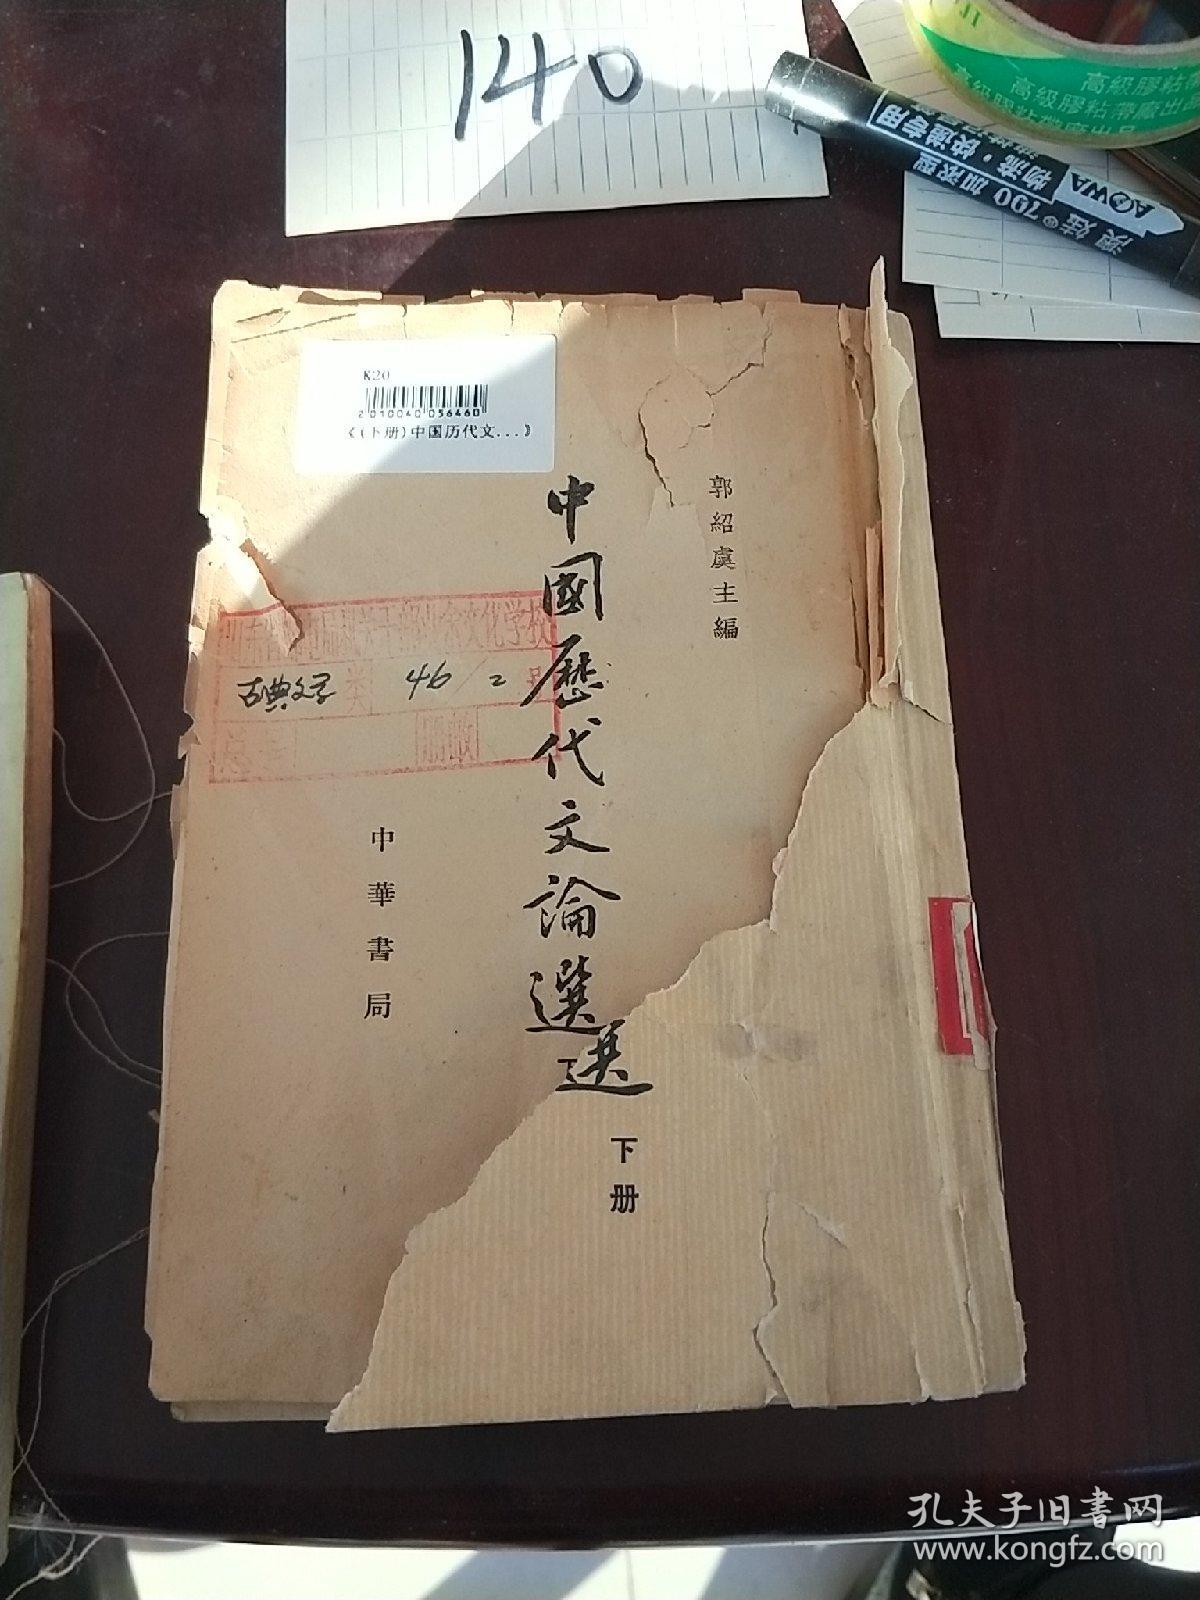 中国历代文论选下册
老旧破